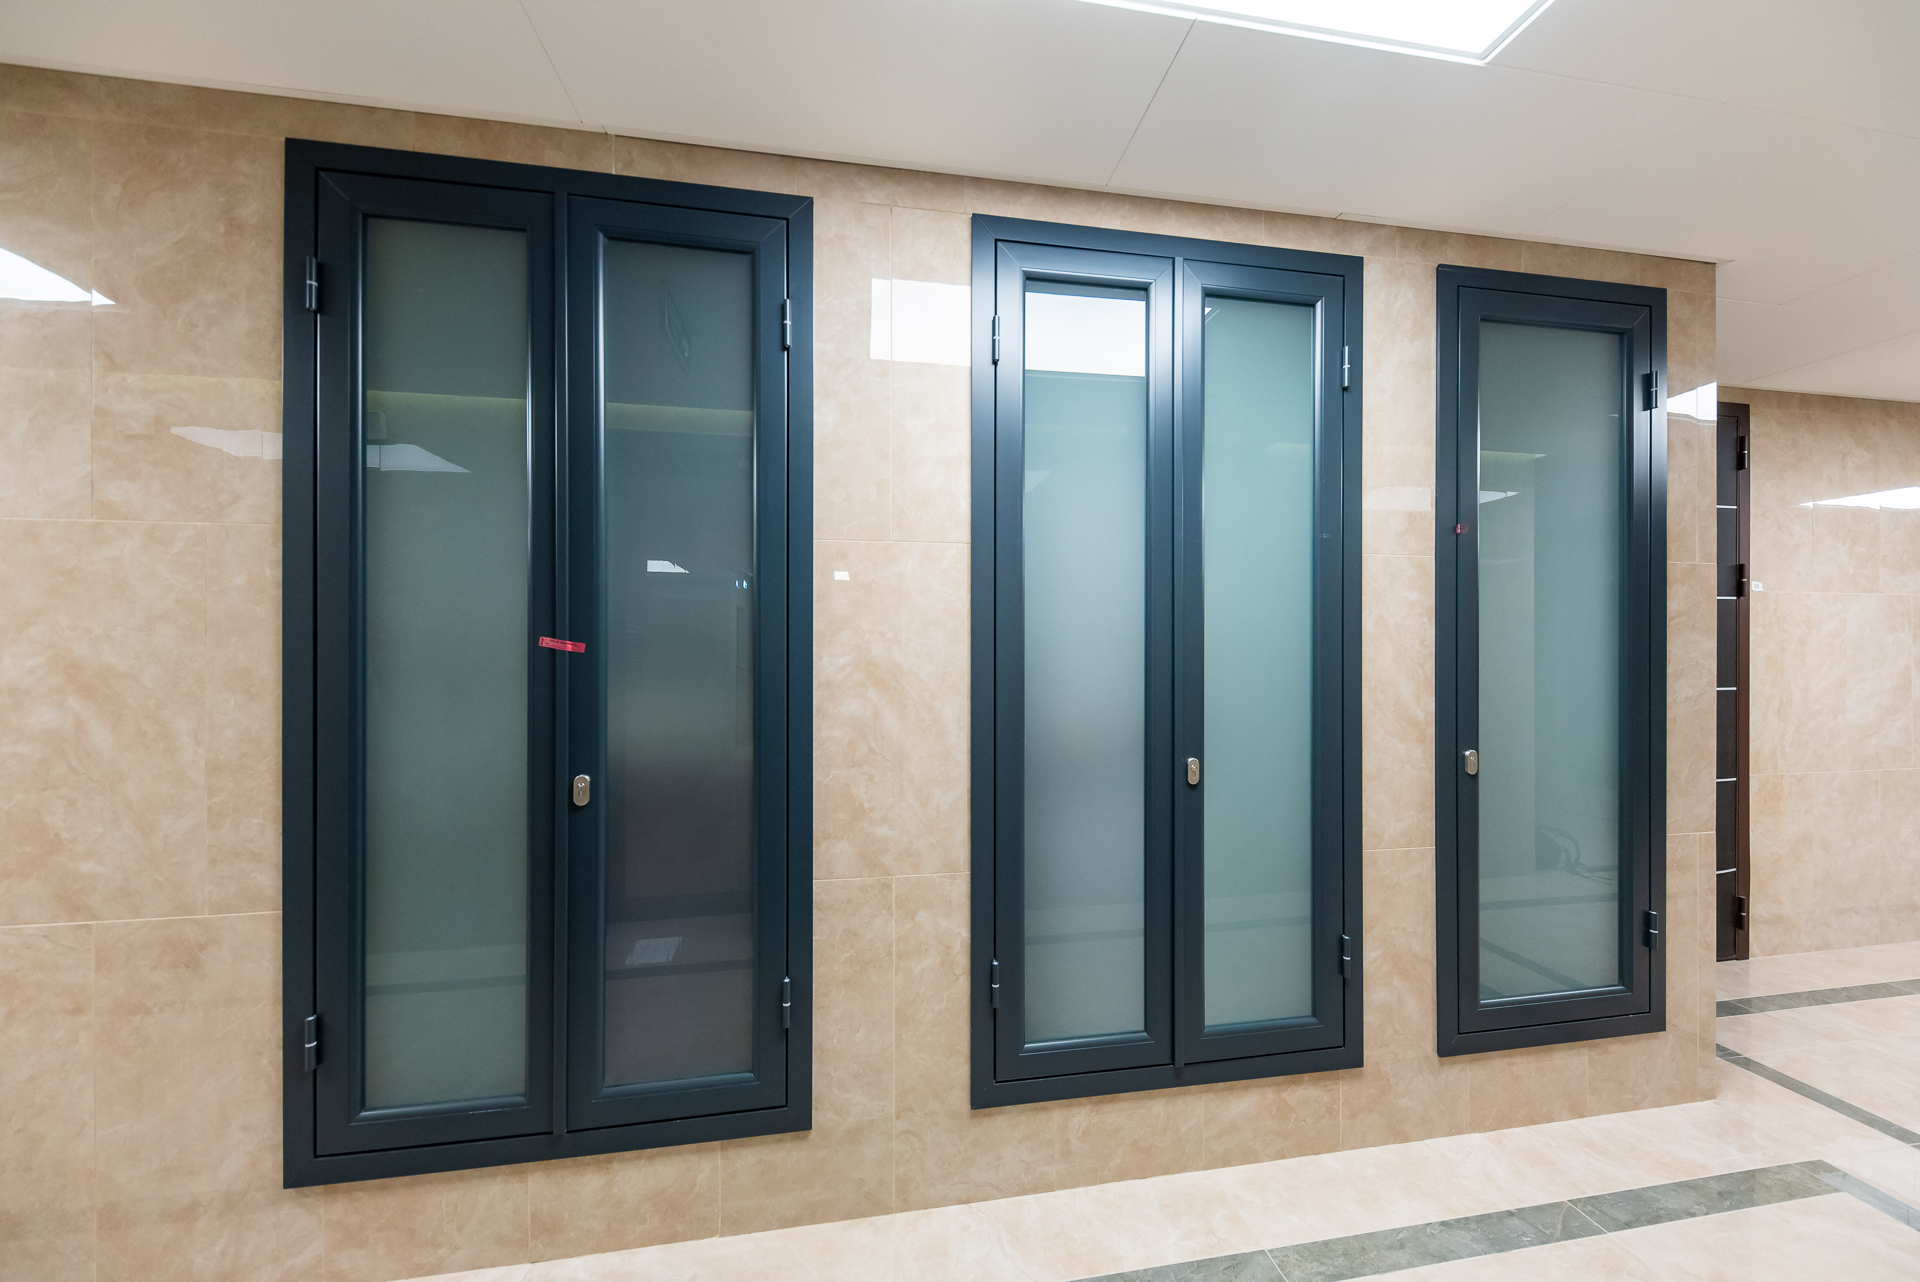 Стеклянные двери NAYADA Vitrage I с одинарным остеклением закаленным стеклом толщиной 5 мм.